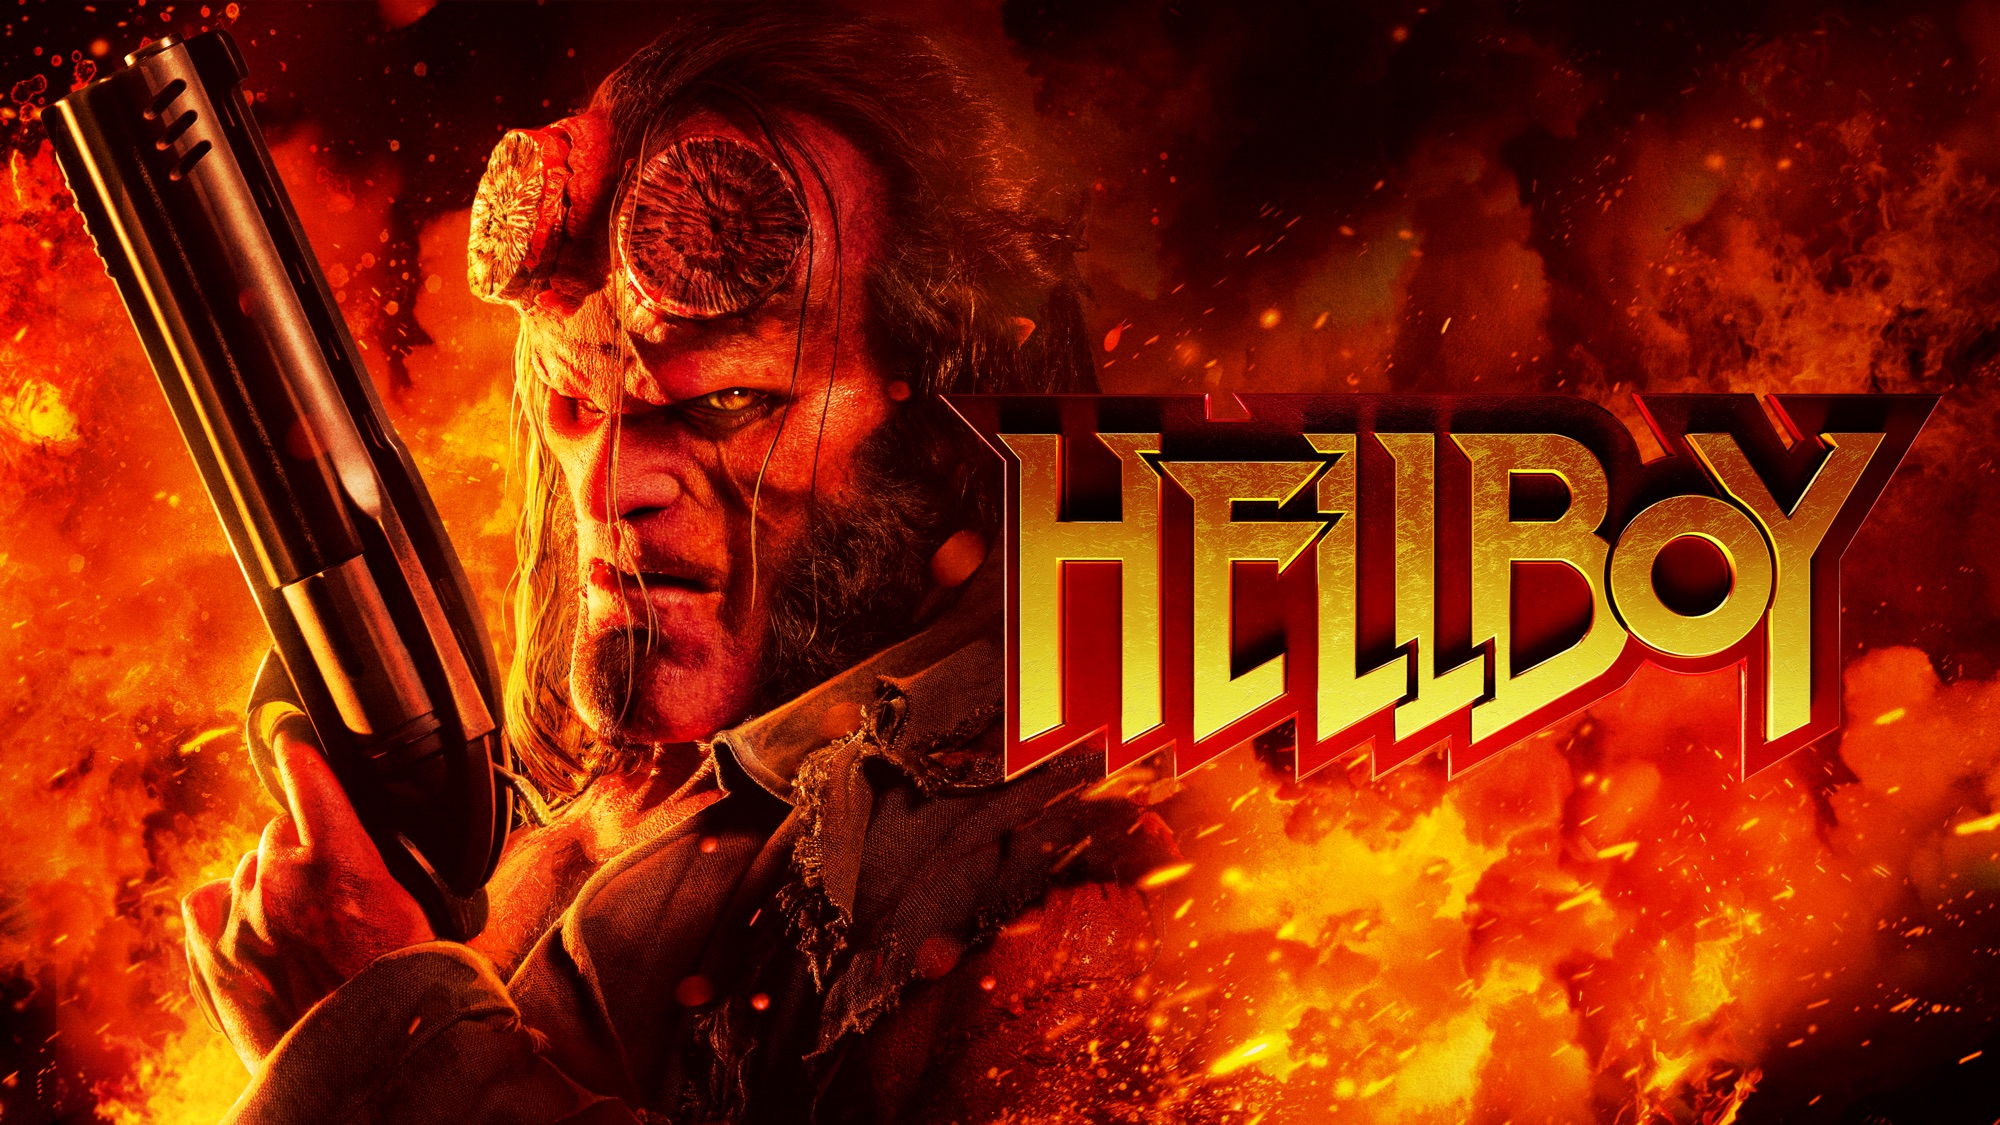 Hellboy 2019 Keyart Wallpapers